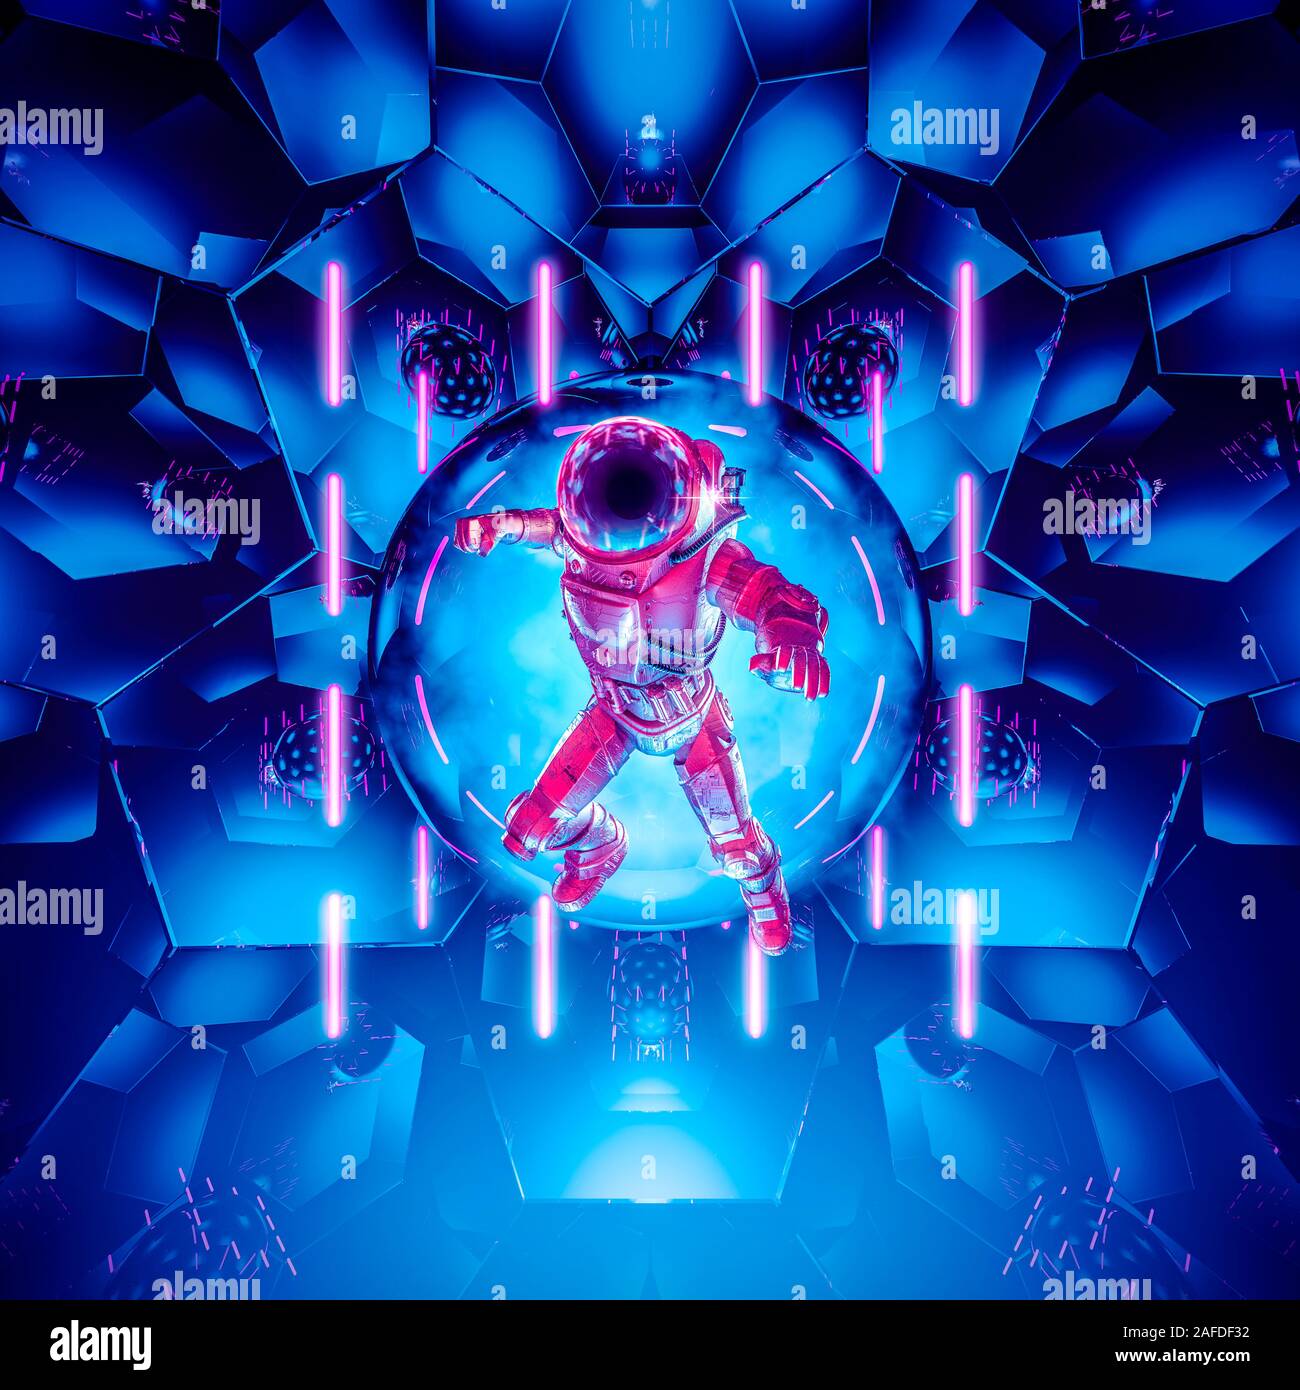 Unendliche Prisma Astronaut/3D-Darstellung der science fiction Szene mit dynamischen Astronaut im Weltraum schweben Anzug vor der leuchtenden Neonröhren Stockfoto